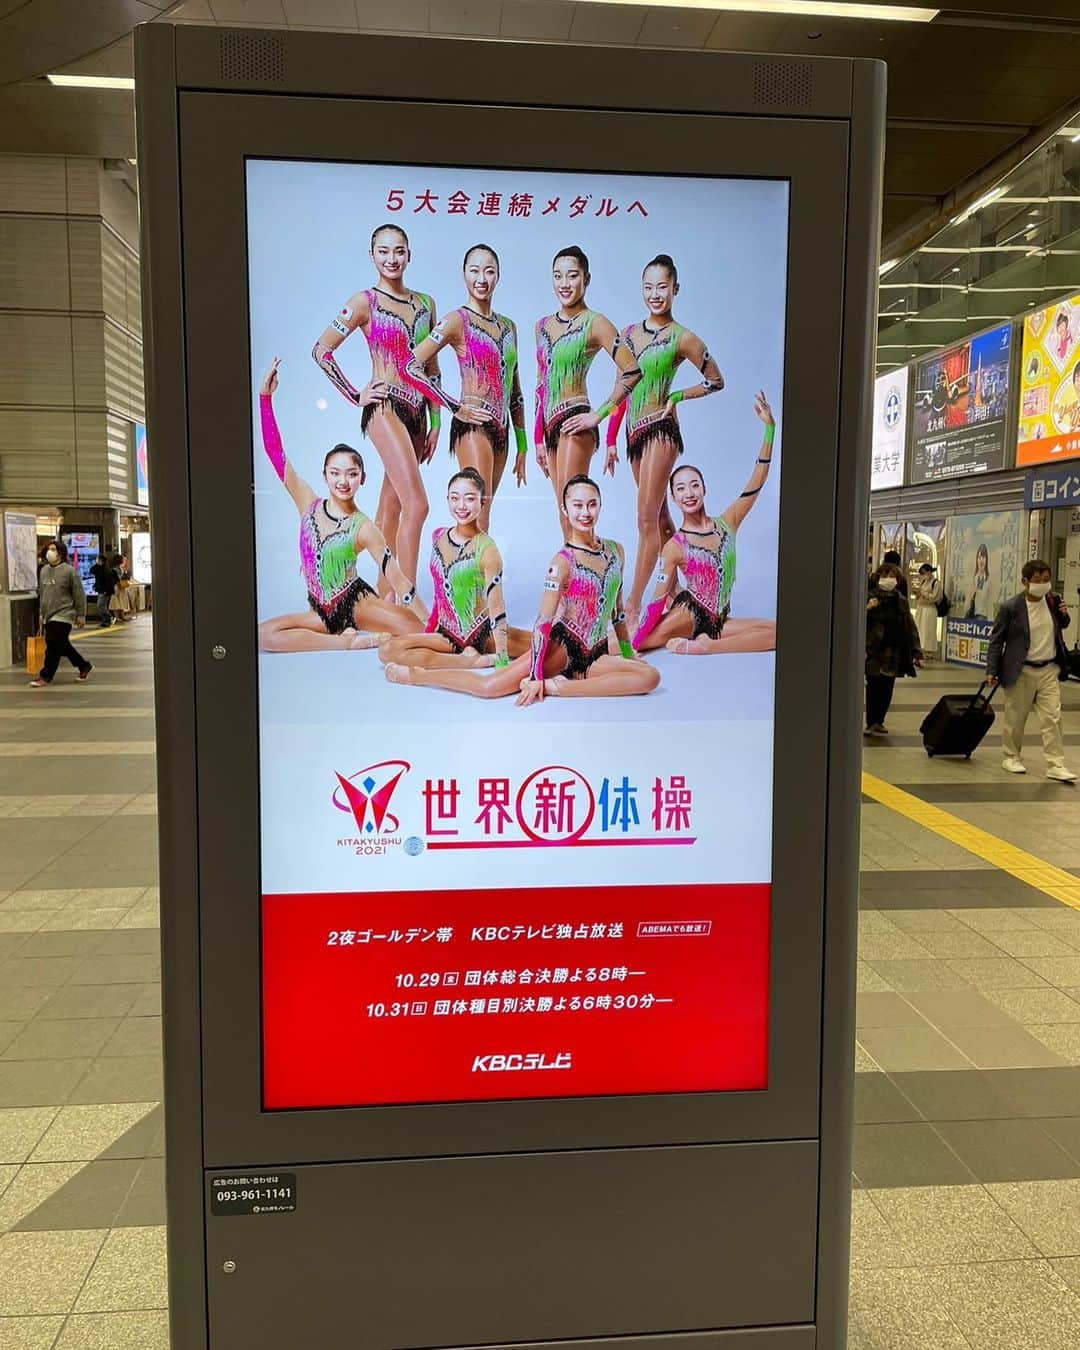 熨斗谷さくらのインスタグラム：「🤸‍♀️世界新体操選手権@北九州 オリンピックが終わって2ヶ月。この世界選手権のために、いろいろな思いを抱えながら試合に向かってきたことを思うと、選手の登場から涙が出てきてしまいました。 また、今まで海外の試合に行ったときしか会えなかった選手たちが日本で踊る姿を見るのはなんだか新鮮で、全ての選手を心から応援していました。 大会開催にあたり、感染対策への配慮、また滅多に行われない日本での世界大会の運営は本当に大変だったと思います。協会やボランティアとして大会運営して下さったみなさま、街をあげて大会を盛り上げ協力して下さった北九州のみなさま、テレビ朝日初めスポンサーのみなさま。沢山の方のお力があり、これだけ盛大に、大会を開催できたのだと思います。 本当にありがとうございました。 この難しいルールに苦しむことも多々あれば、コロナ禍でどの国の選手も苦労したと思うけれど、それでも演技をやり遂げる姿を直接、もしくは中継を介し見ることができ、新体操の凄さや素晴らしさが日本中に届いたのではないかと思います。 進化し続ける新体操。その中で日本も活躍できるように、私も何かできるよう全力で取り組んでいきたいと思います。 私ごとですが、今までとは違う形でこの大会に携わらせていただいたことにも感謝の気持ちでいっぱいです。 本当にありがとうございました。 みんなお疲れ様!!!😭🇯🇵✨♥️ #フェアリージャパン#新体操#フェアリージャパンPOLA #日本体操協会#世界新体操#北九州#chacott#テレビ朝日#rg#хг#japan」